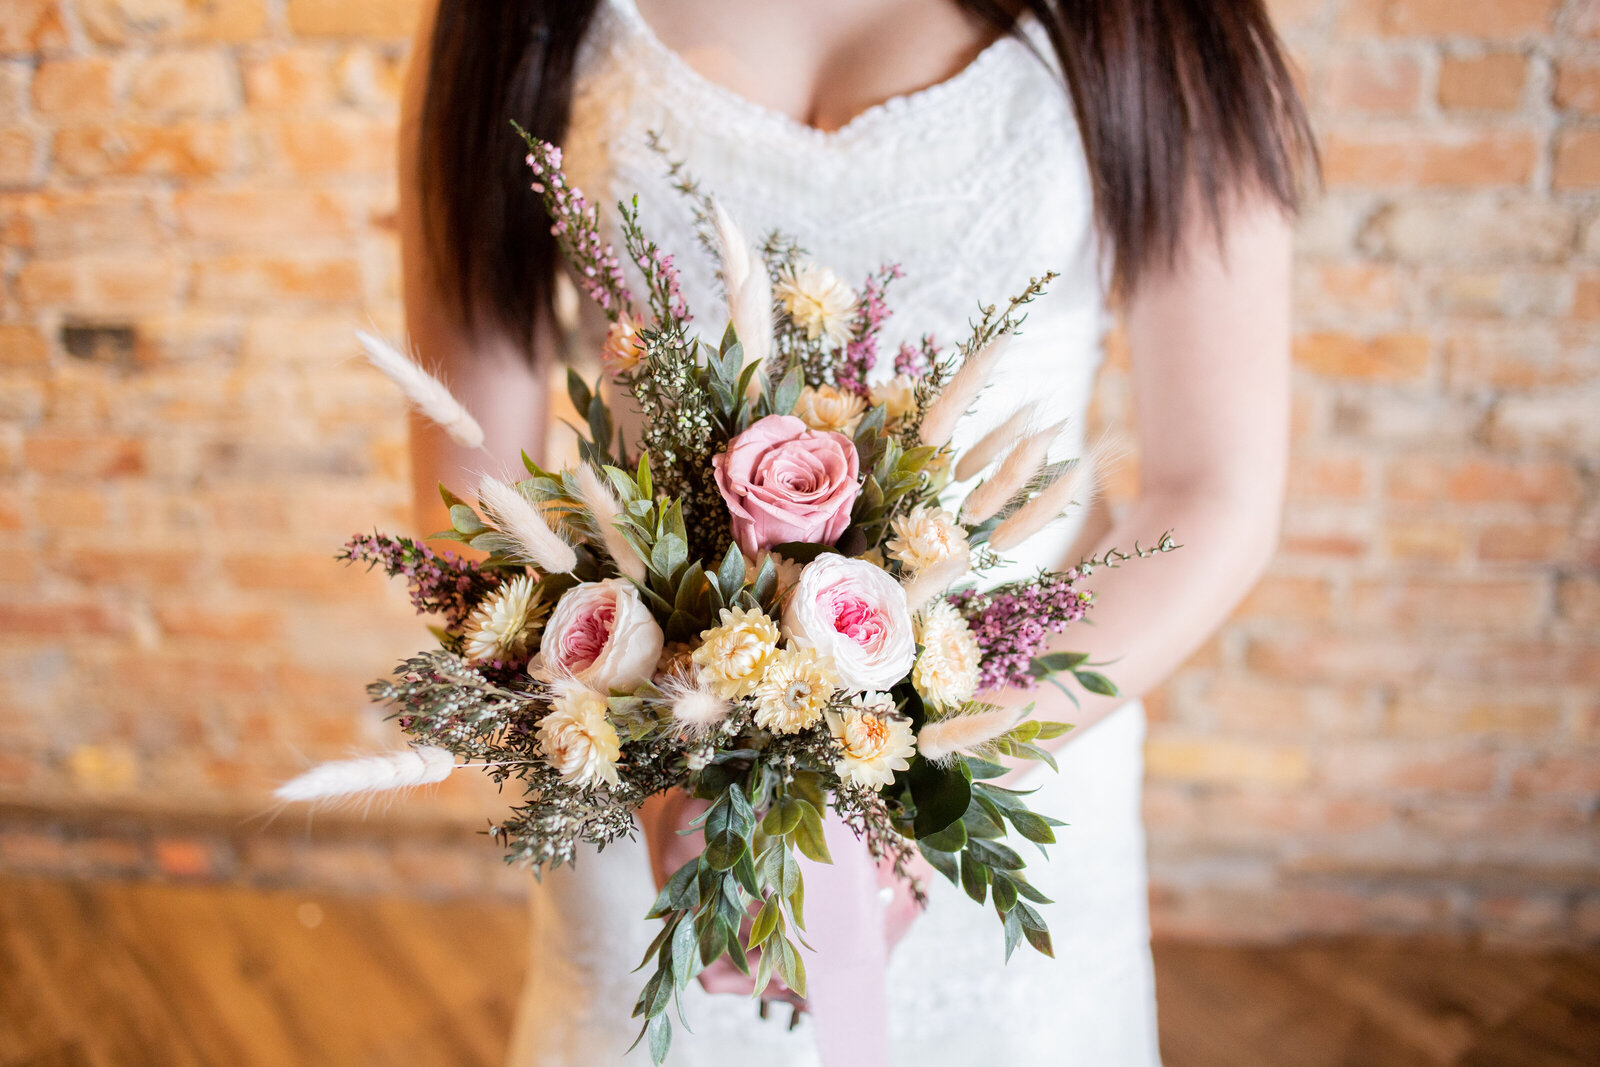 Idaho Wedding Photographers captures spring wedding bridal bouquet